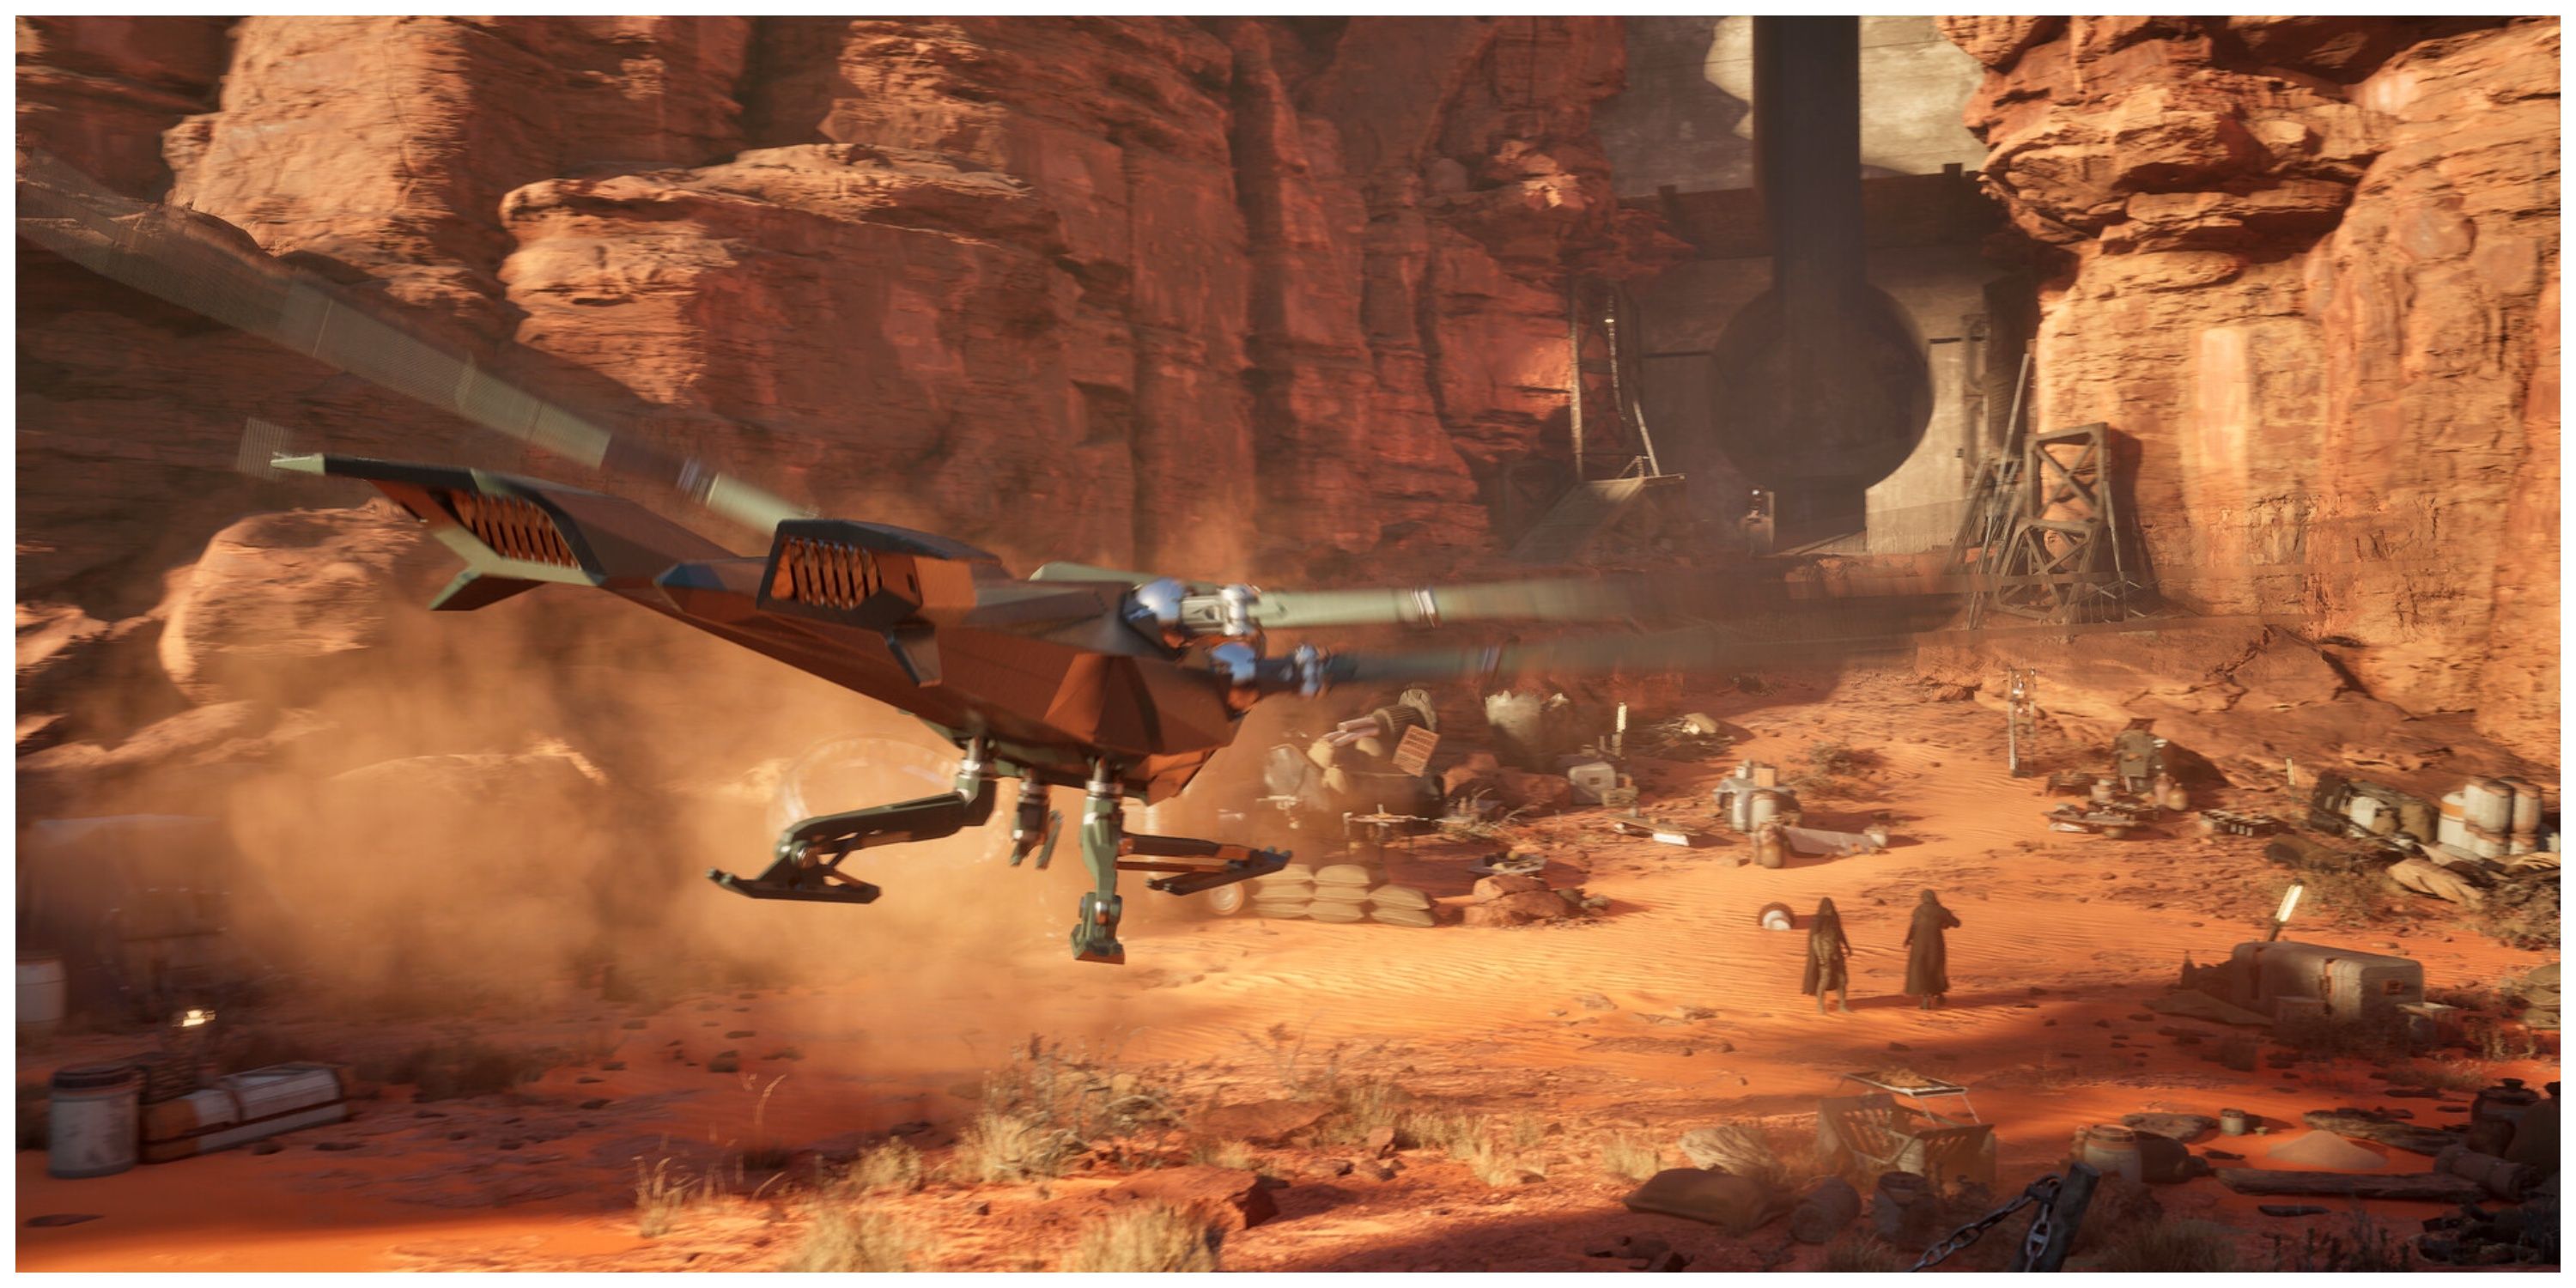 Dune: Awakening - Steam Store Page Screenshot (Ornithopter landing)